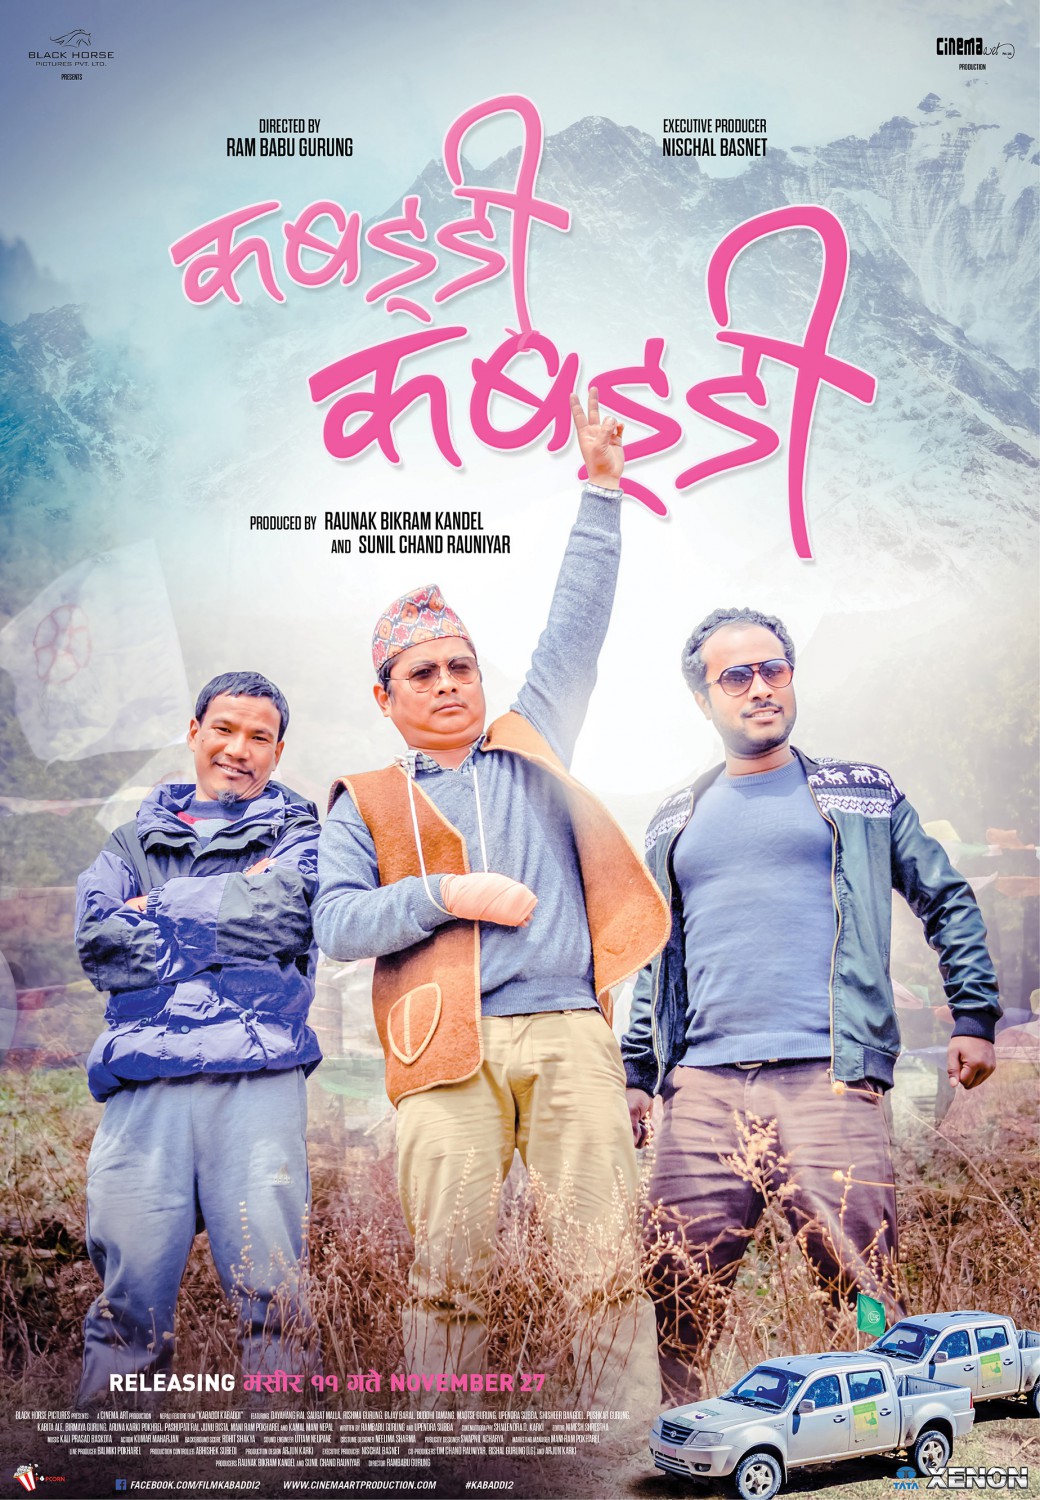 Extra Large Movie Poster Image for Kabaddi Kabaddi (#3 of 5)